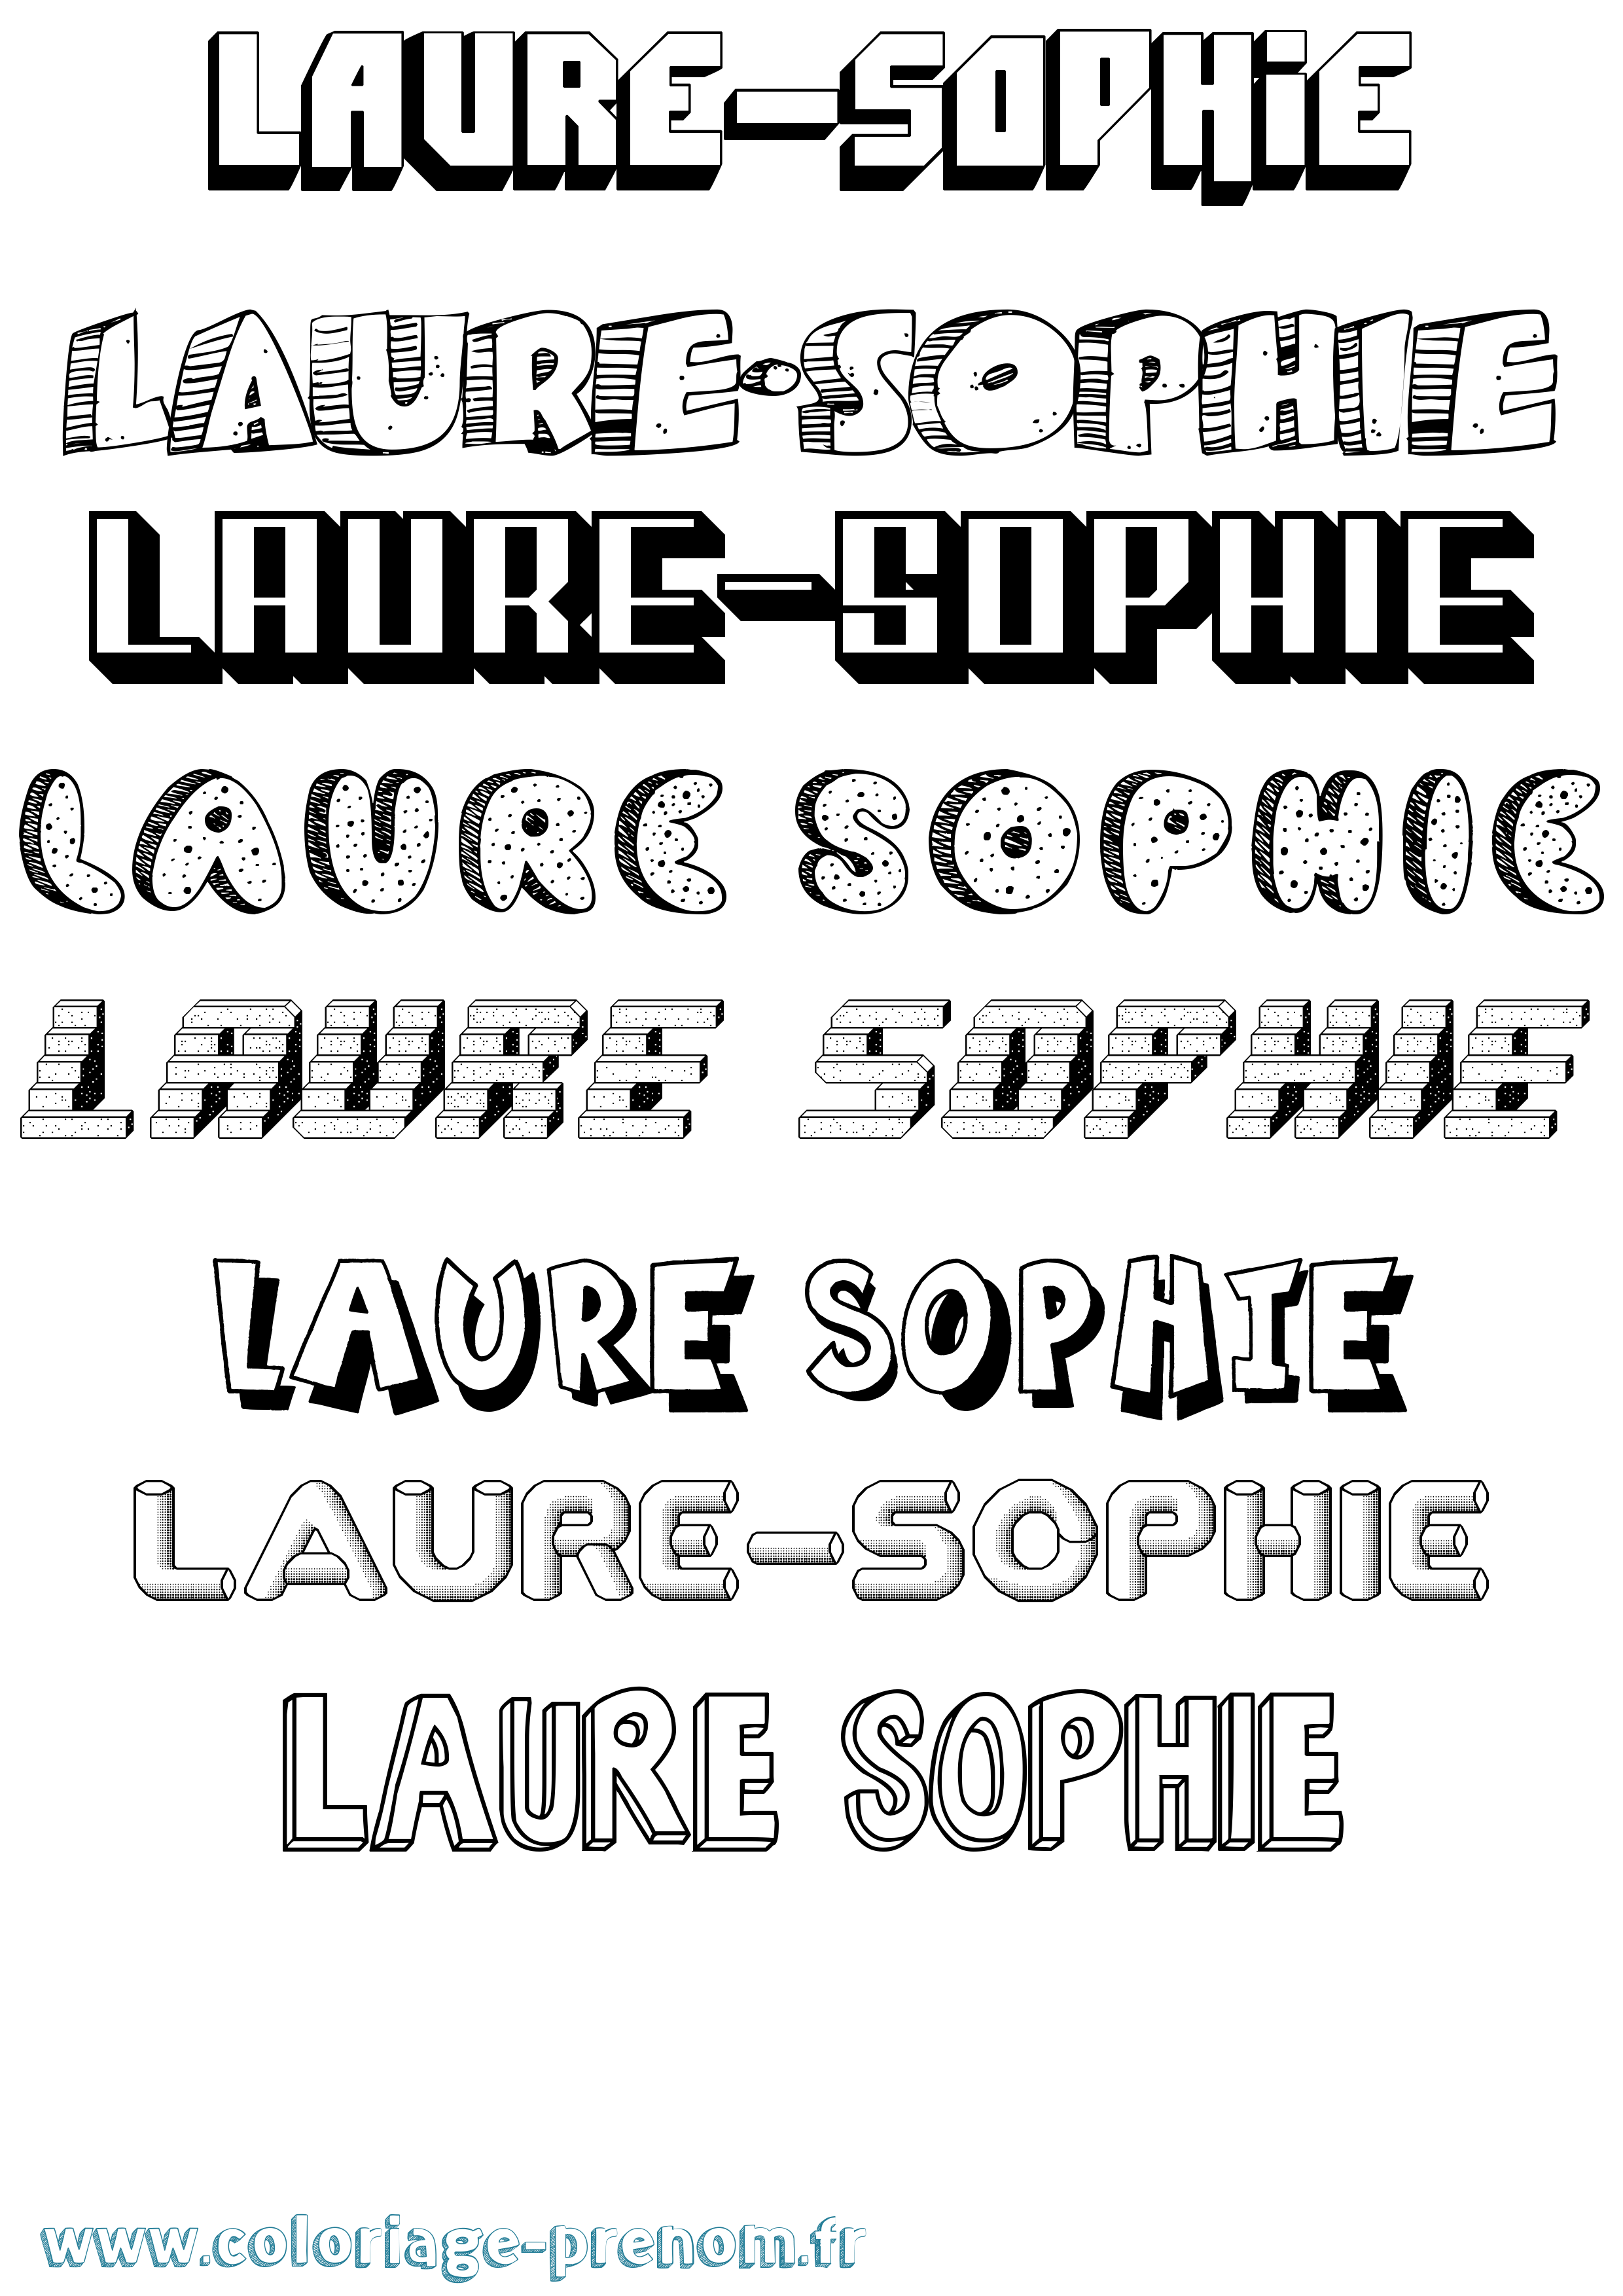 Coloriage prénom Laure-Sophie Effet 3D